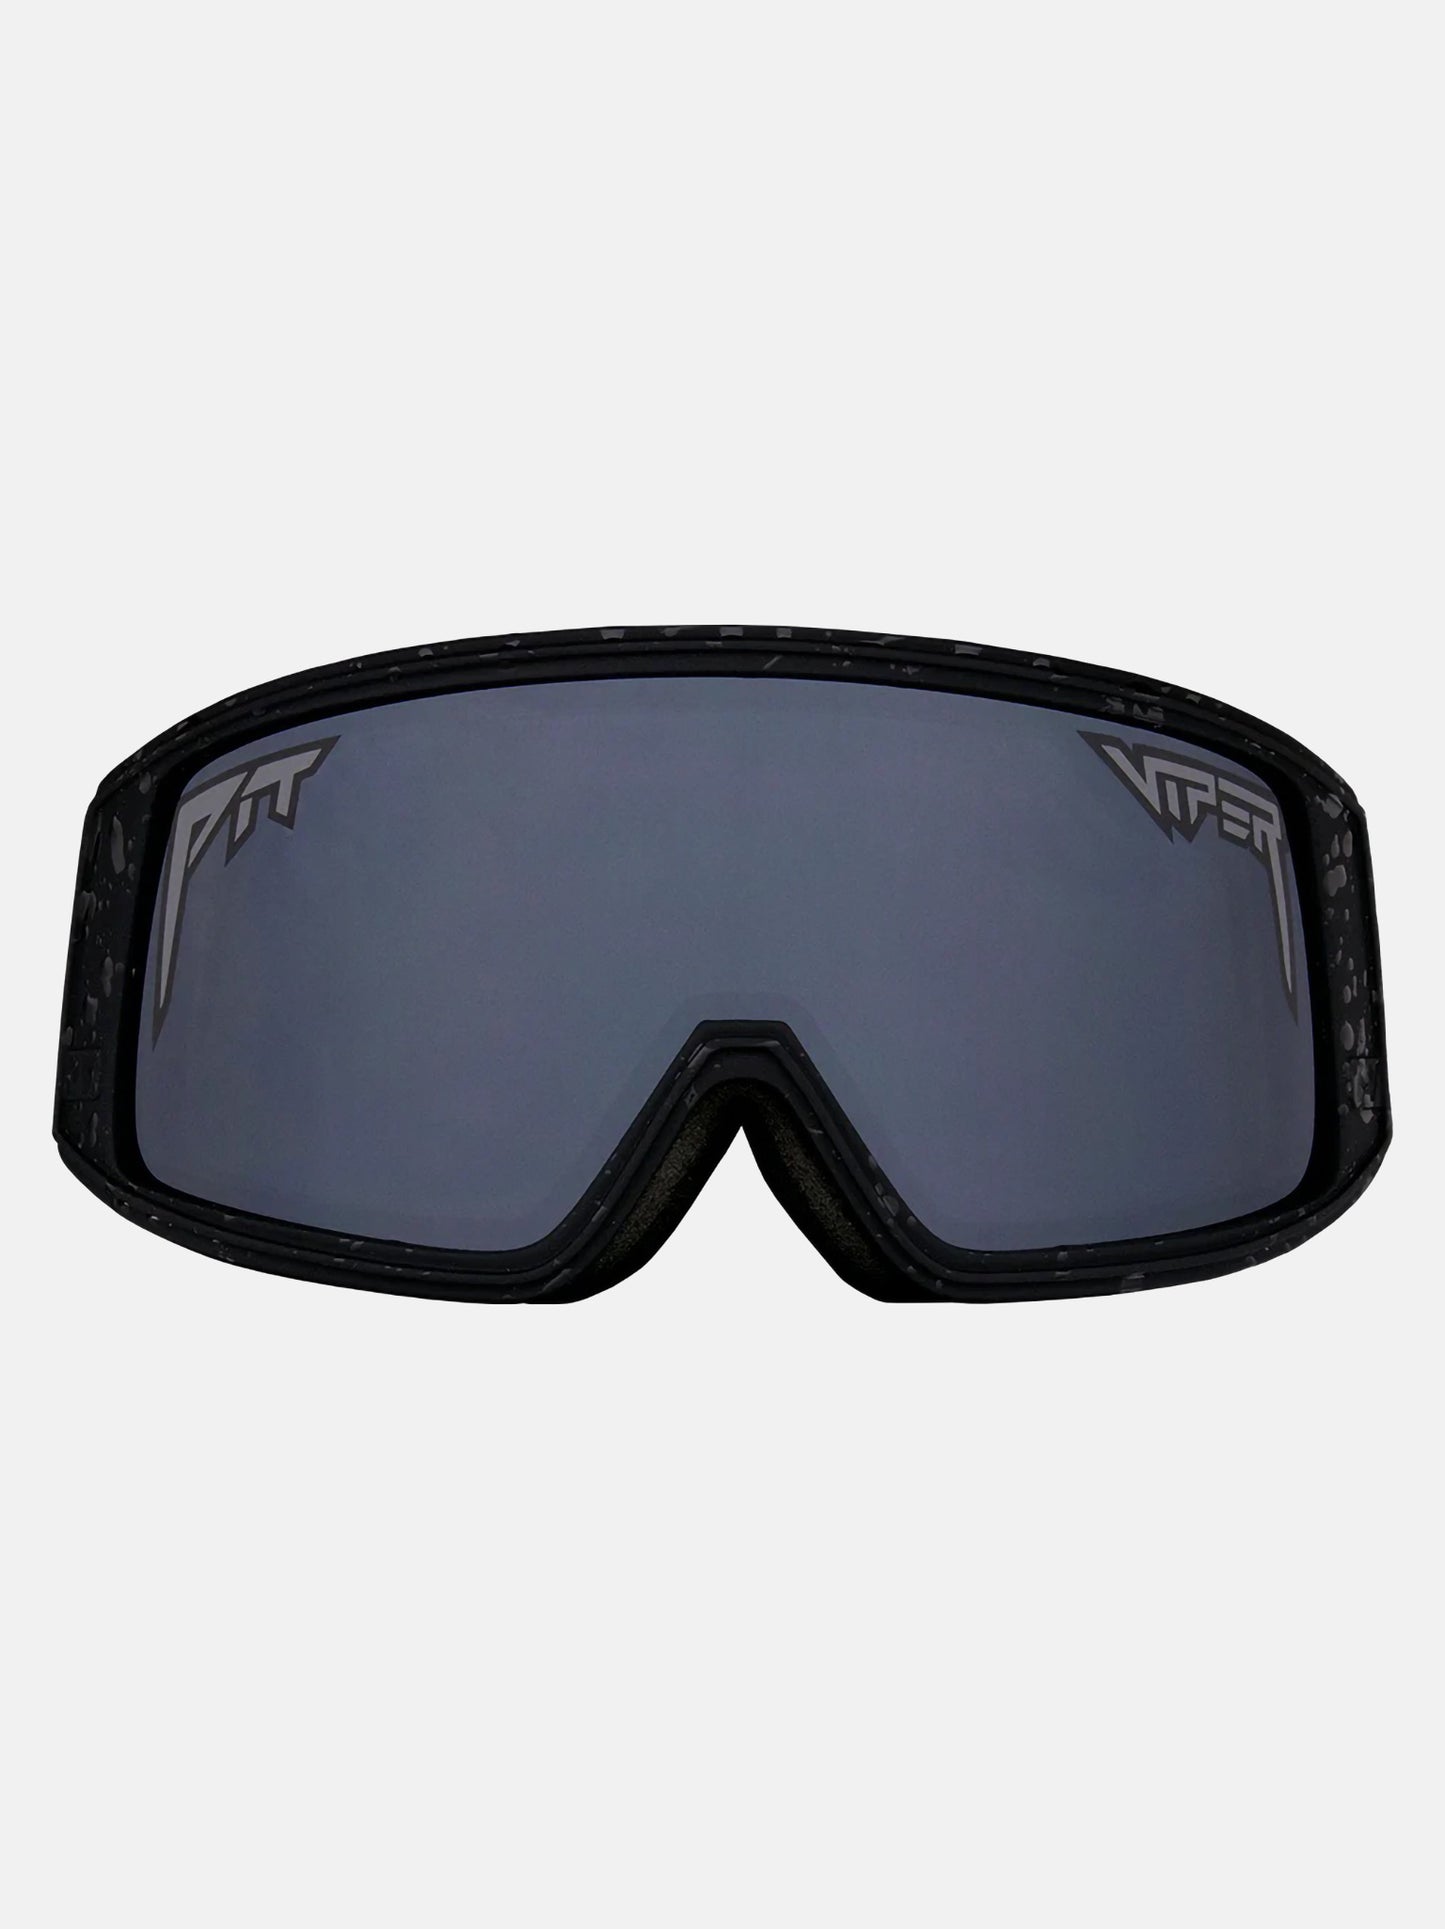 Pit Viper The Goggles